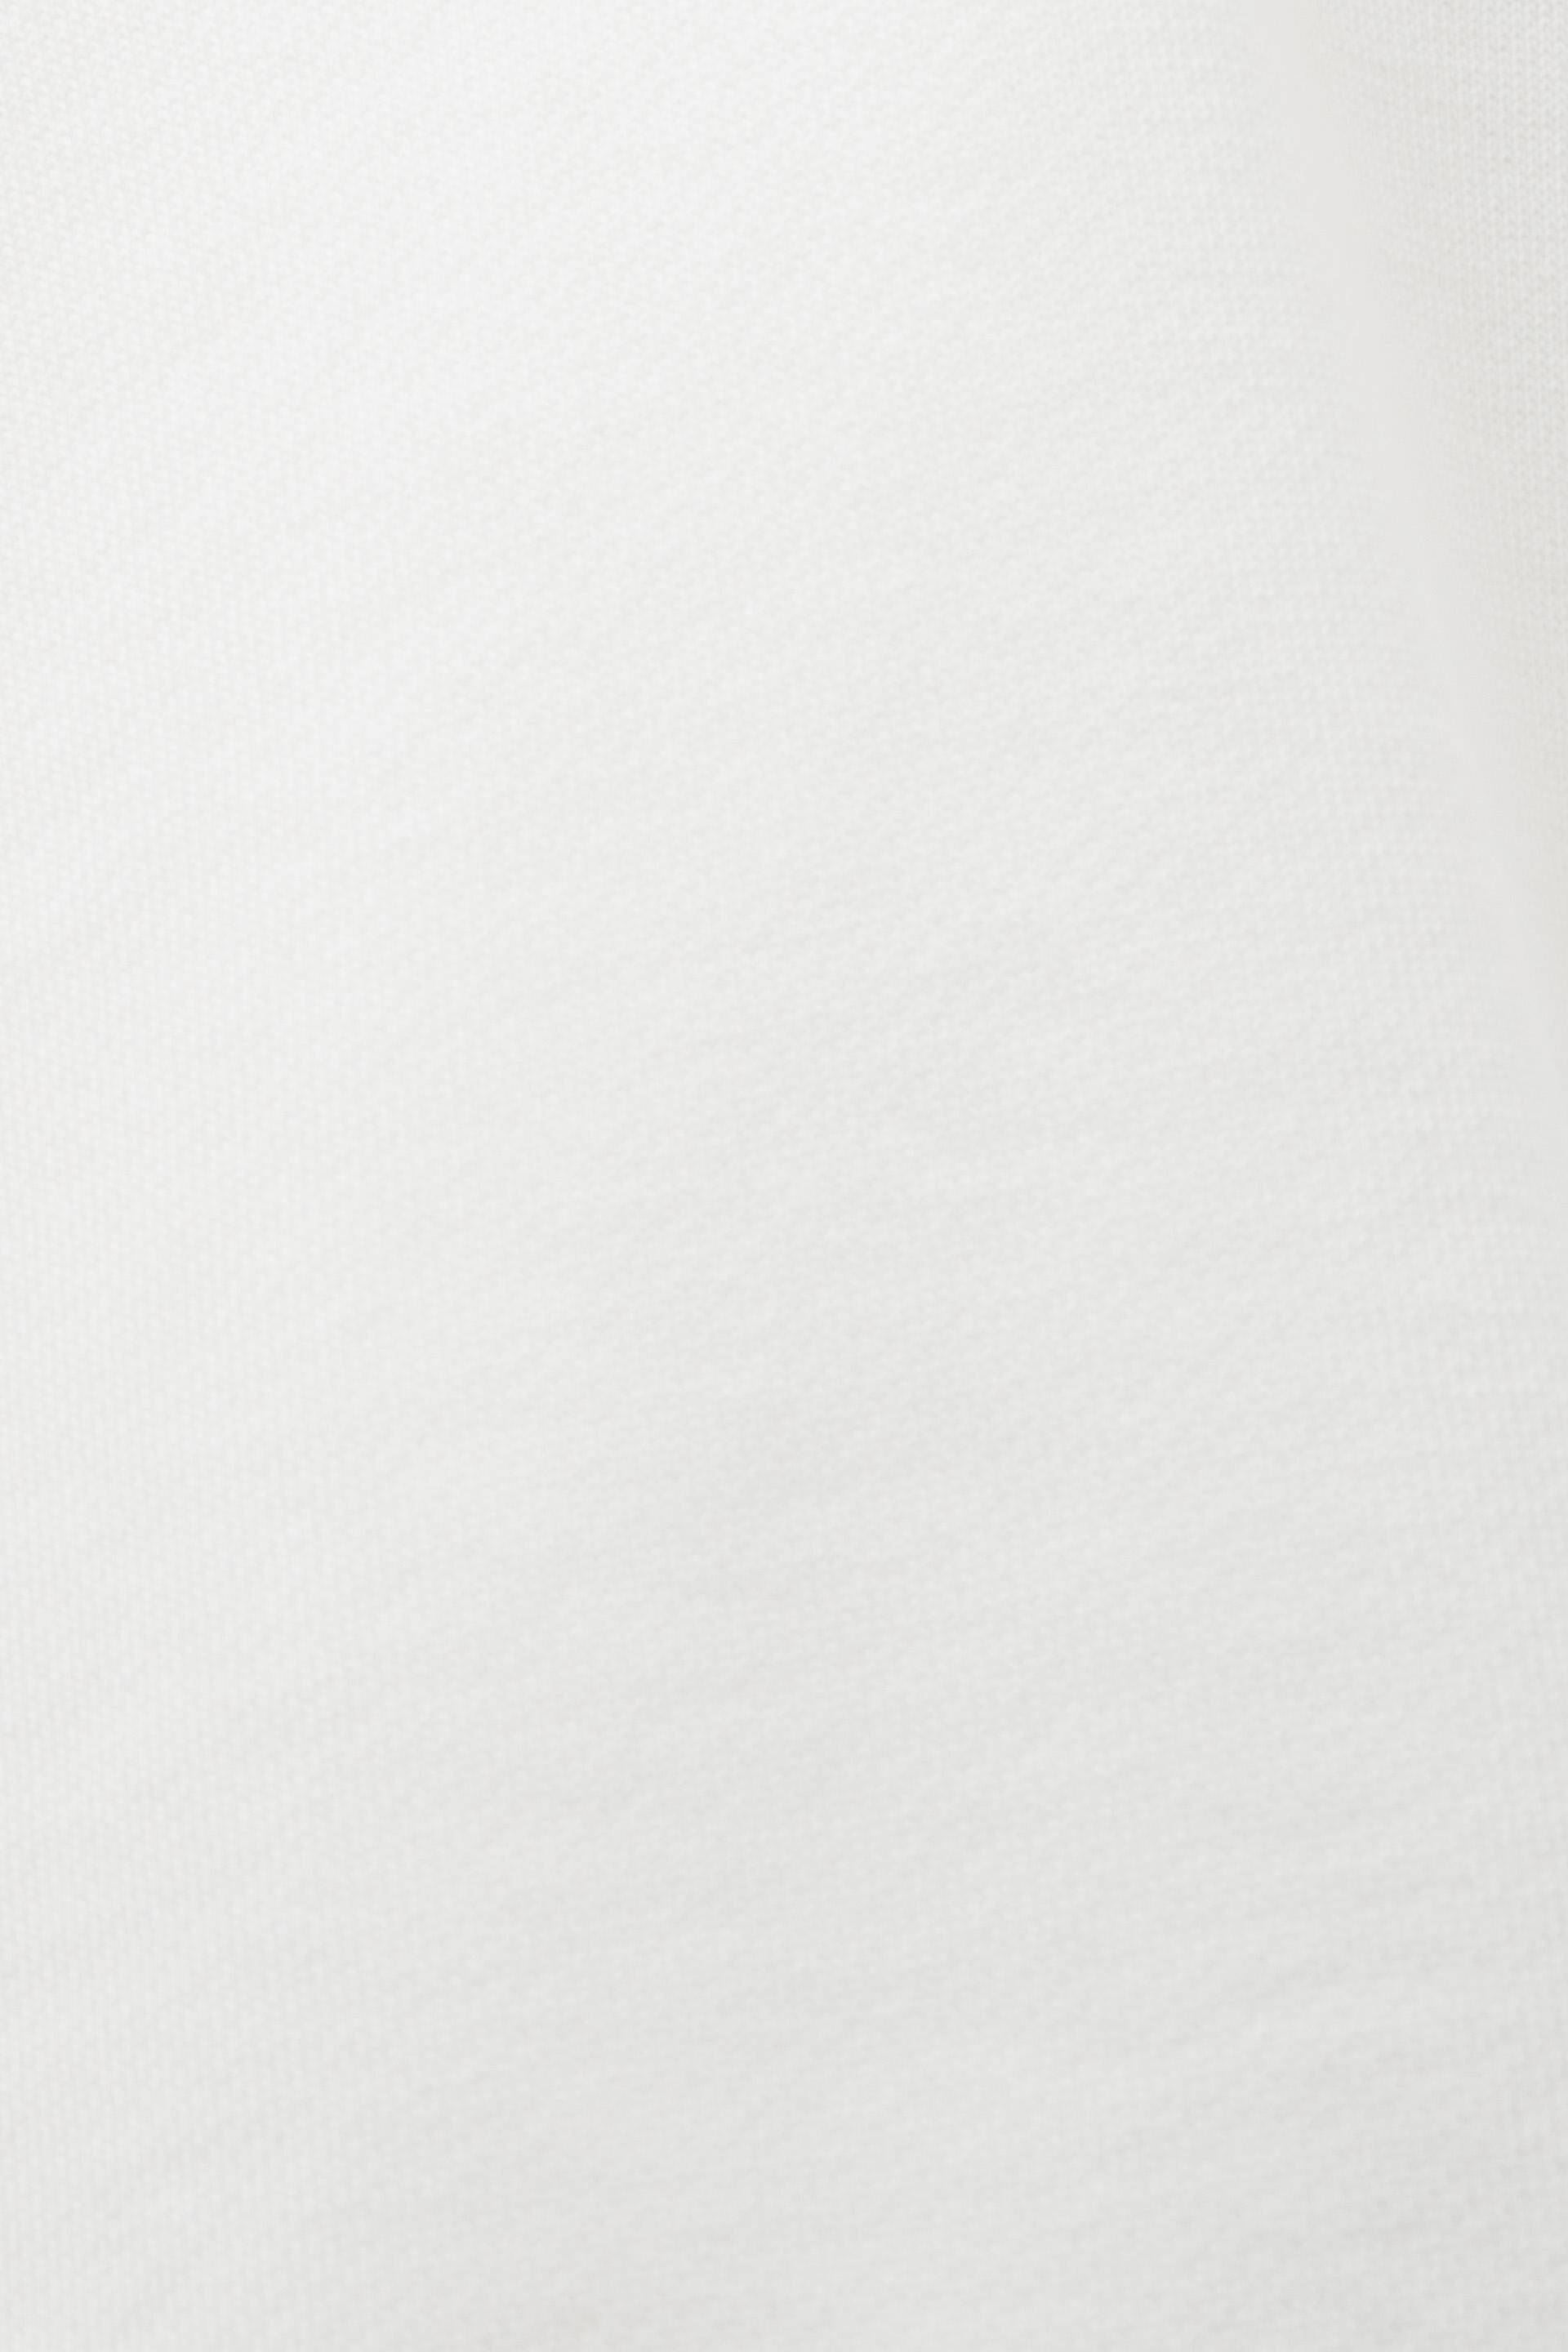 Esprit Damen Kapuzenpullover mit aufgesticktem Logo, Bio-Baumwolle